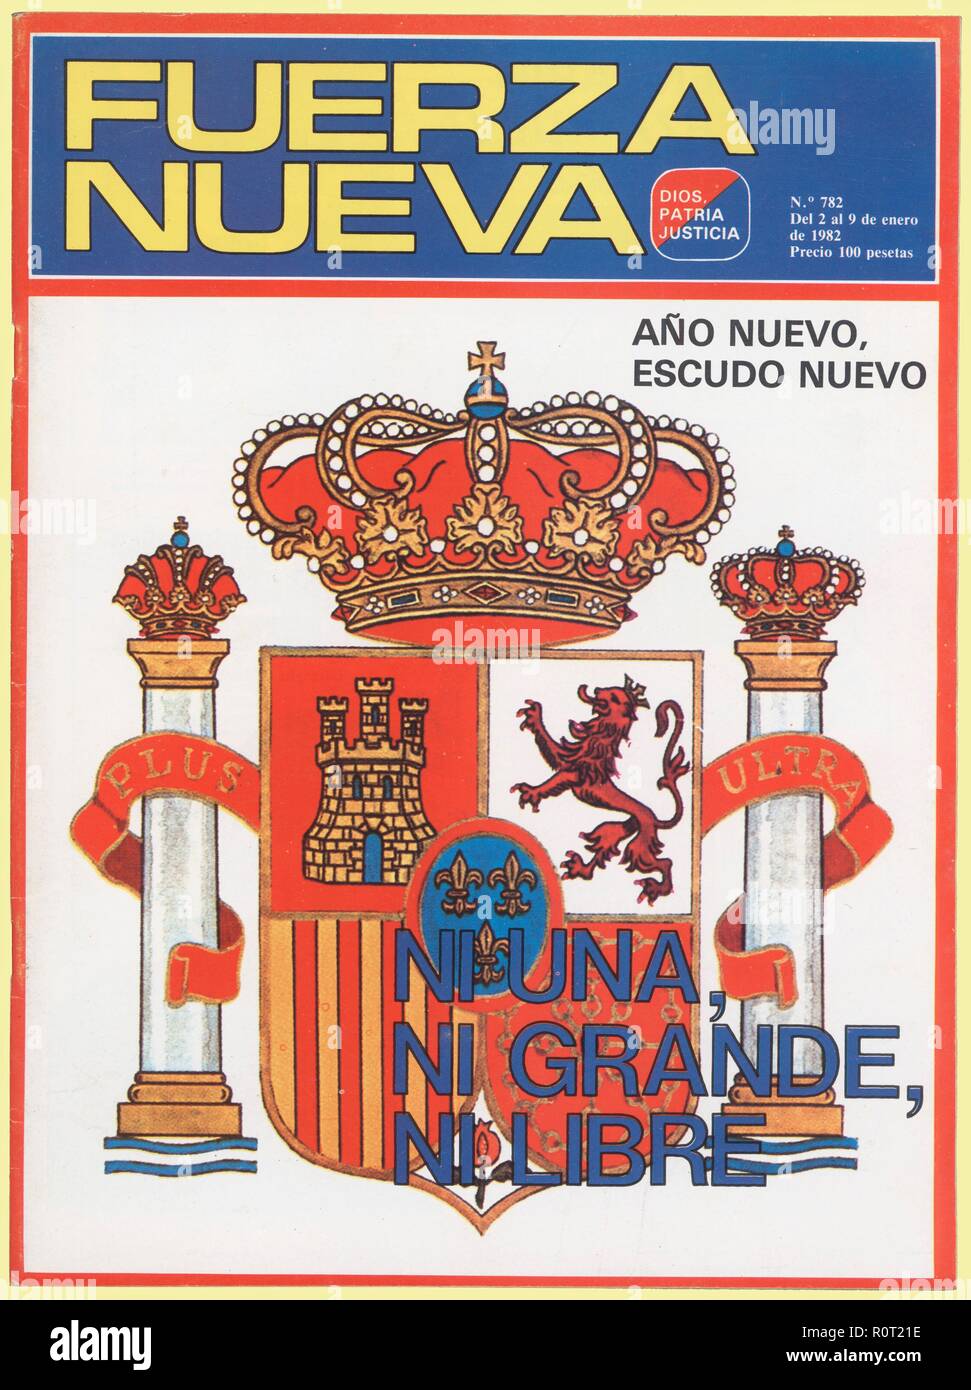 Portada de la revista Fuerza Nueva, órgano del partido de extrema derecha. Madrid, 1982. Stock Photo